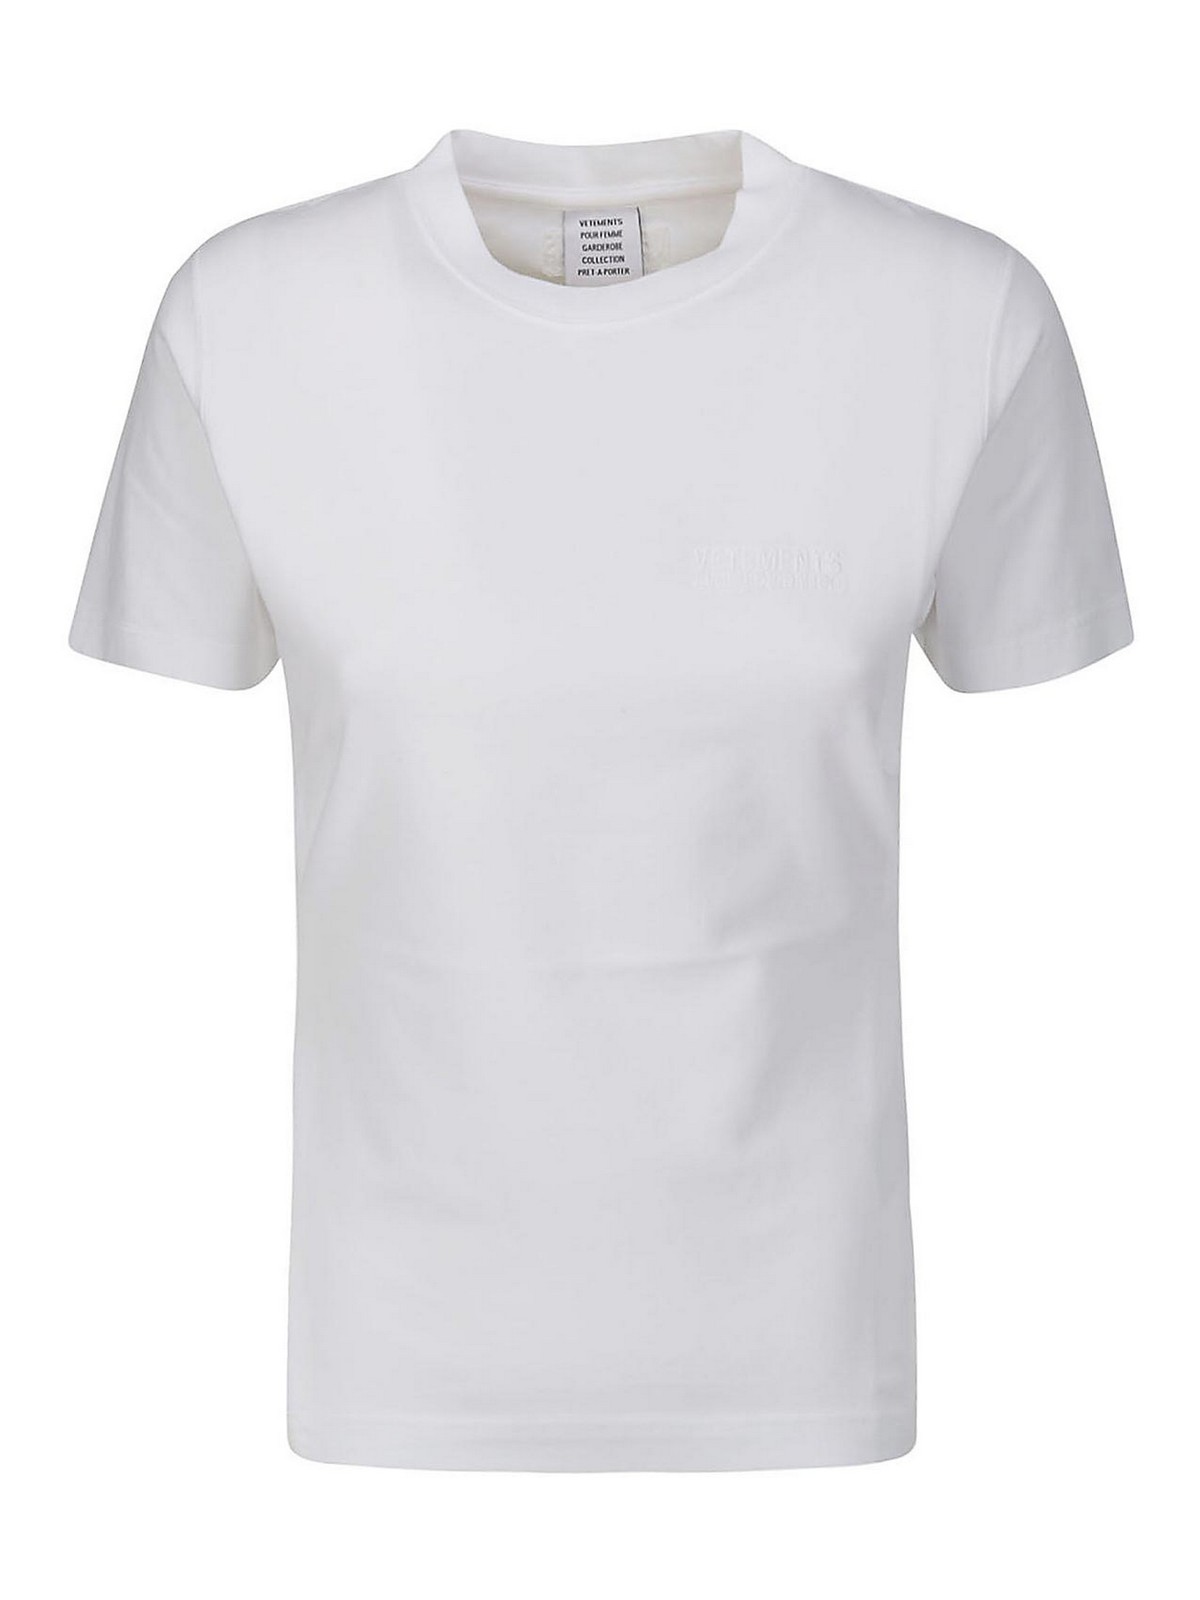 Shop Vetements Camiseta - Blanco In White